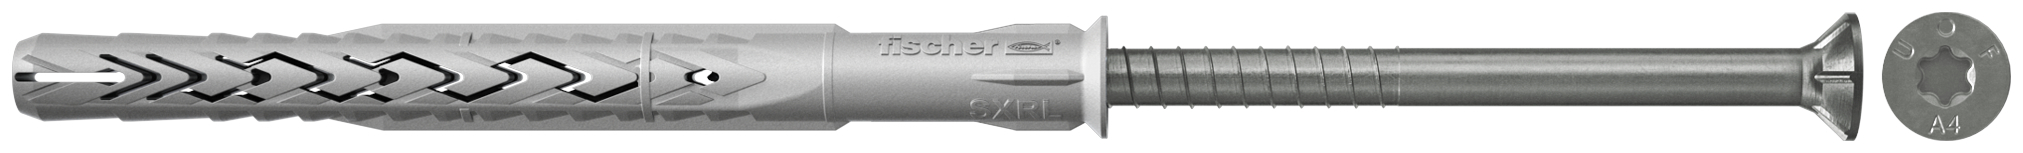 fischer Tasselli prolungati SXRL 10X180 T A4 (1 Pz.) Tassello prolungato in nylon con marcatura CE con vite premontata in acciaio inox A4, T.S.P. impronta torx fie2380